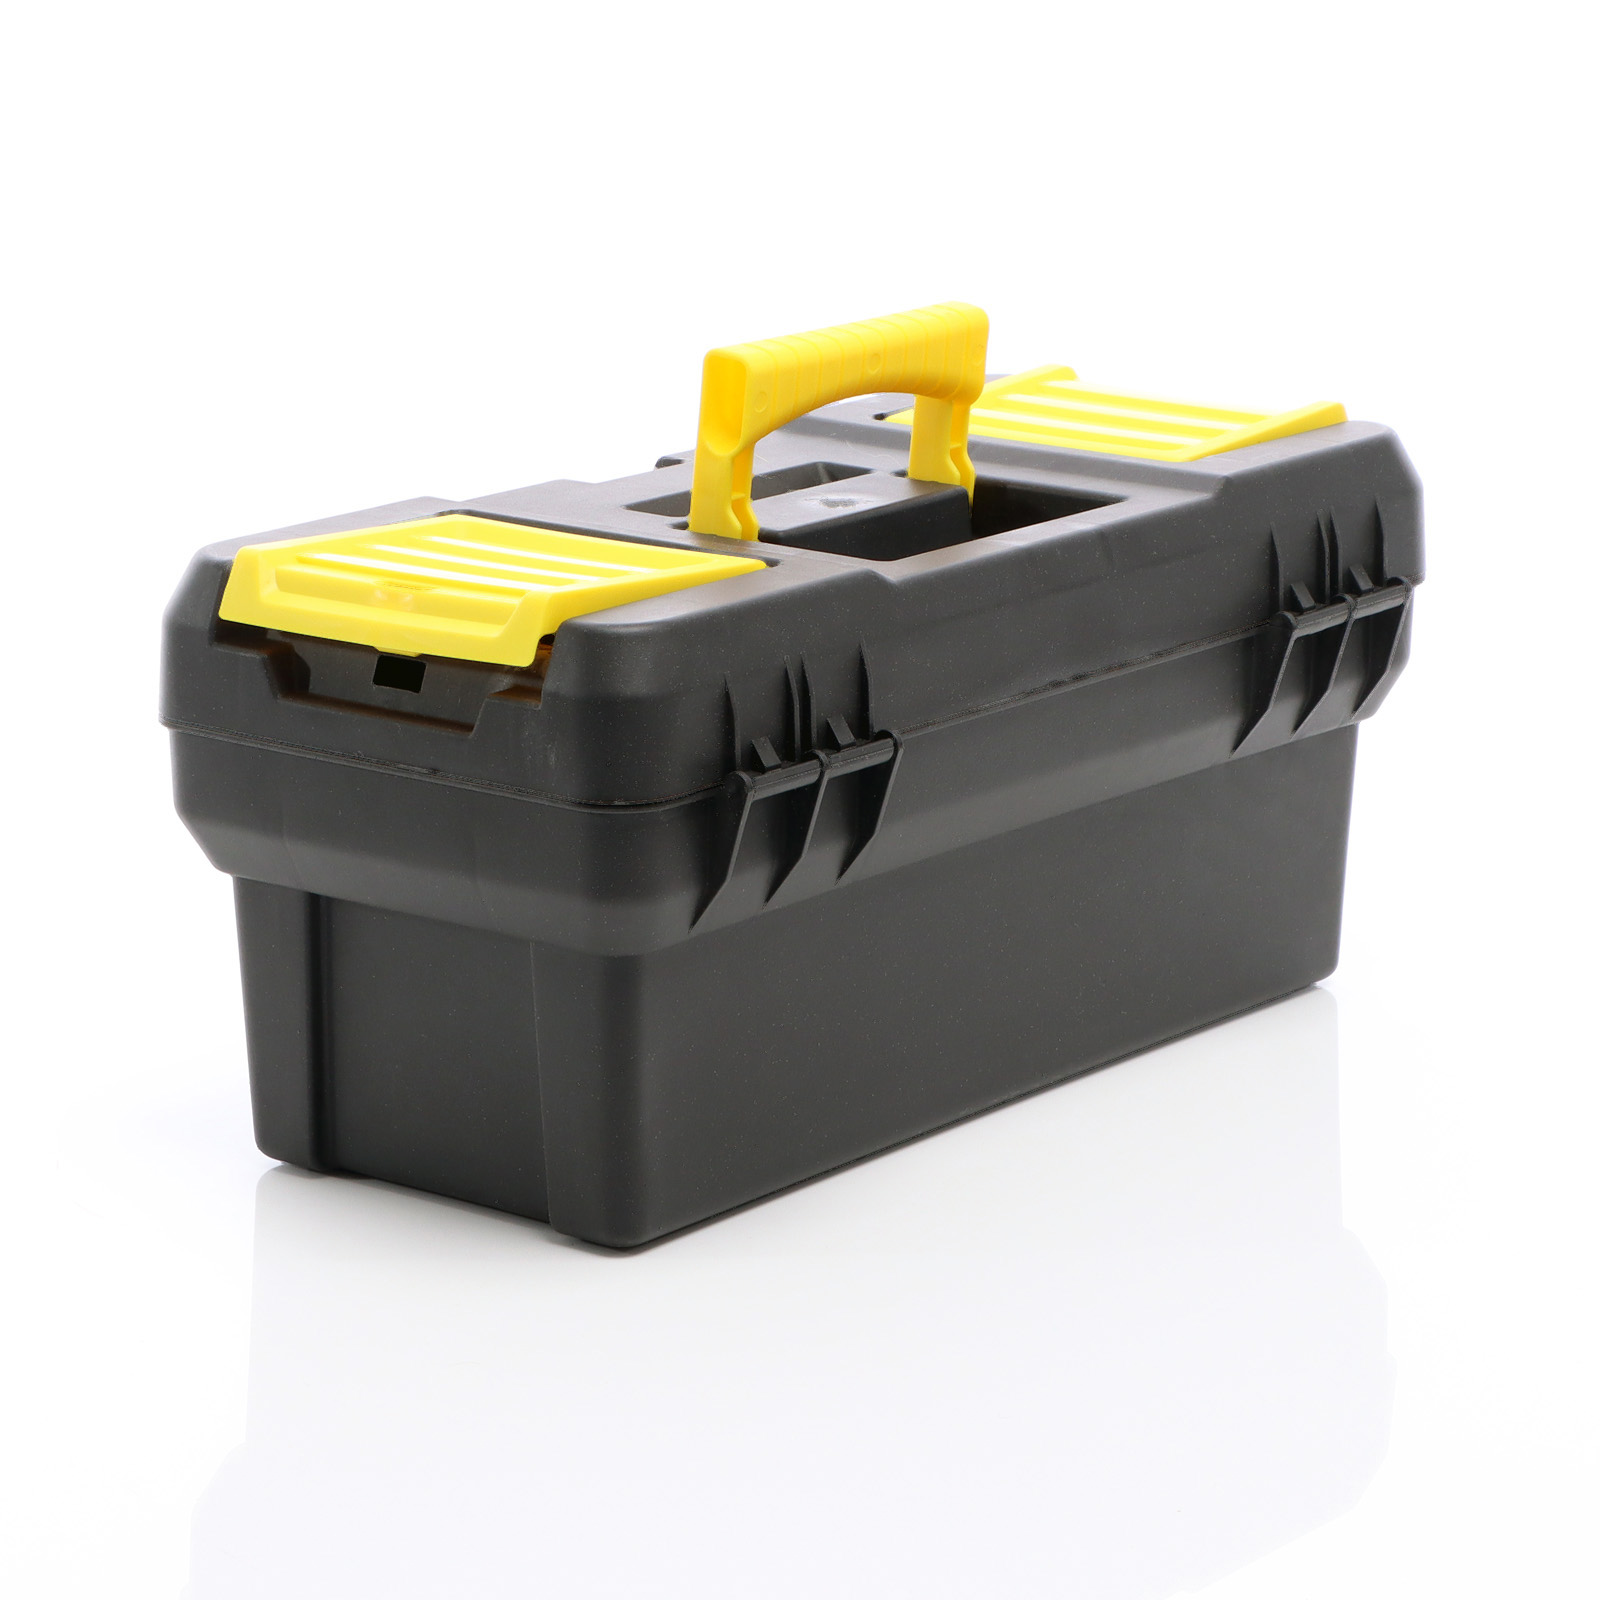 Caja de herramientas vacía de plástico con cerradura, color negro